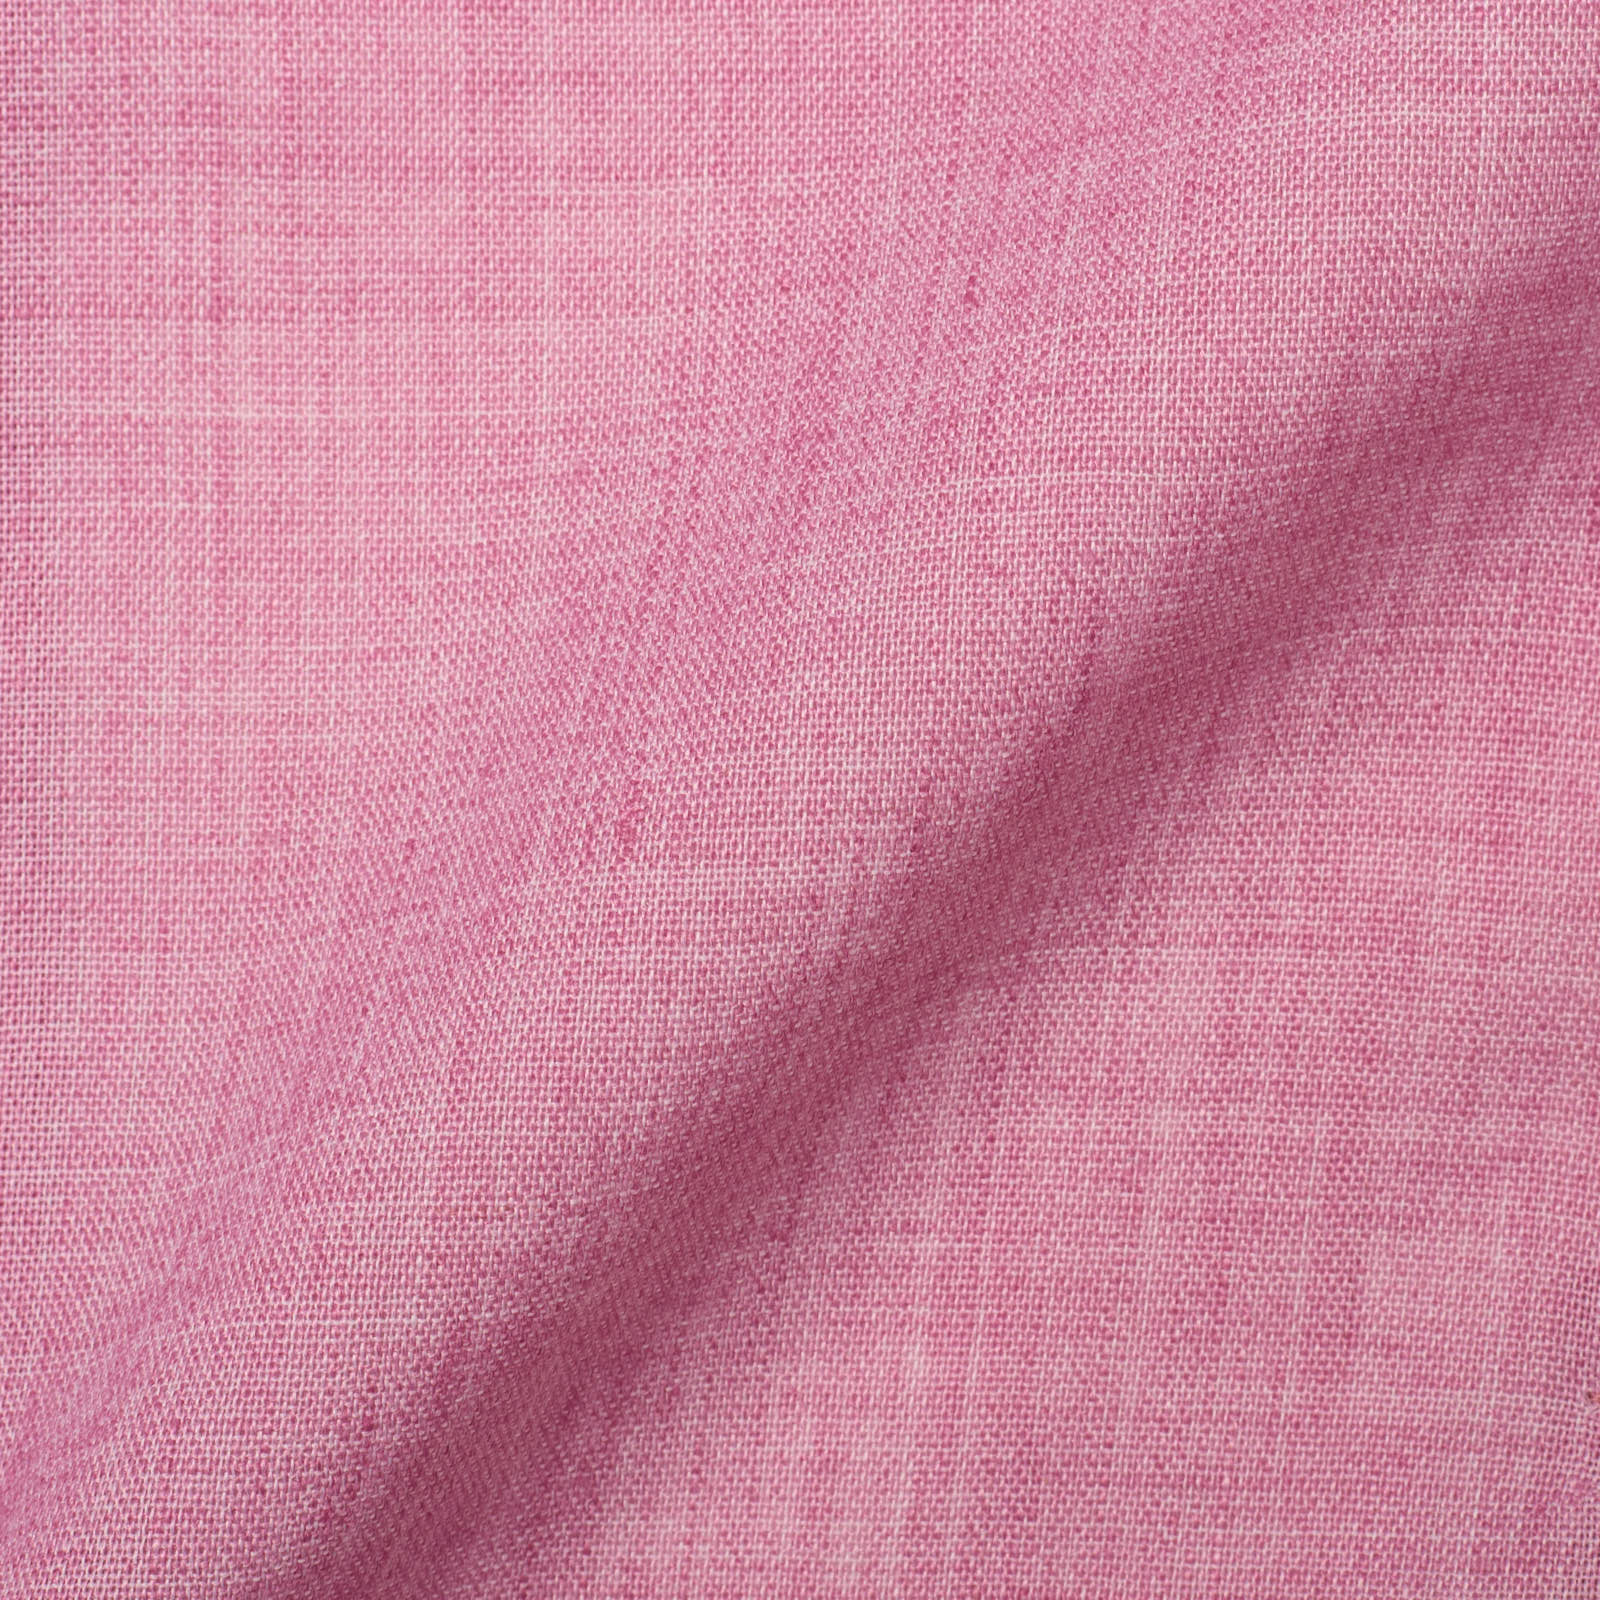 SARTORIA PARTENOPEA Pink Polyester-Linen Jacket EU 48 NEW US 38 Current Model